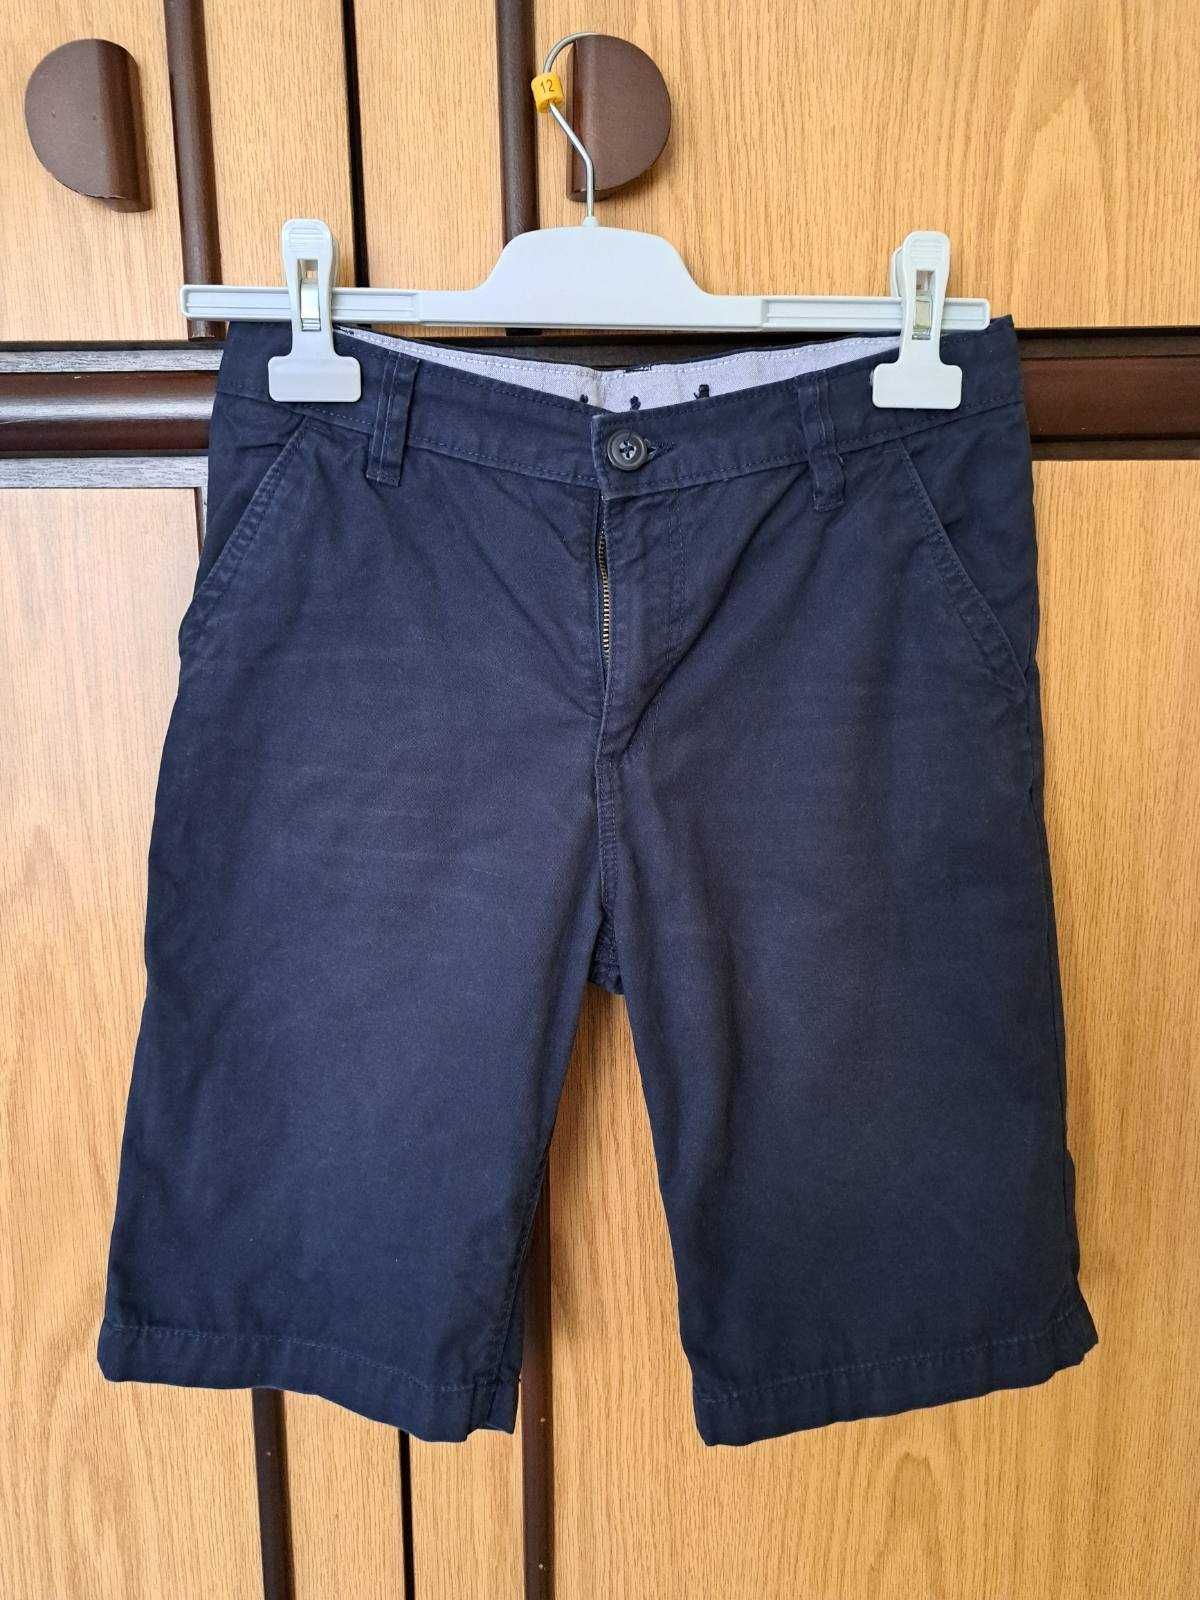 Къси панталони за момче 13 г., 158 см